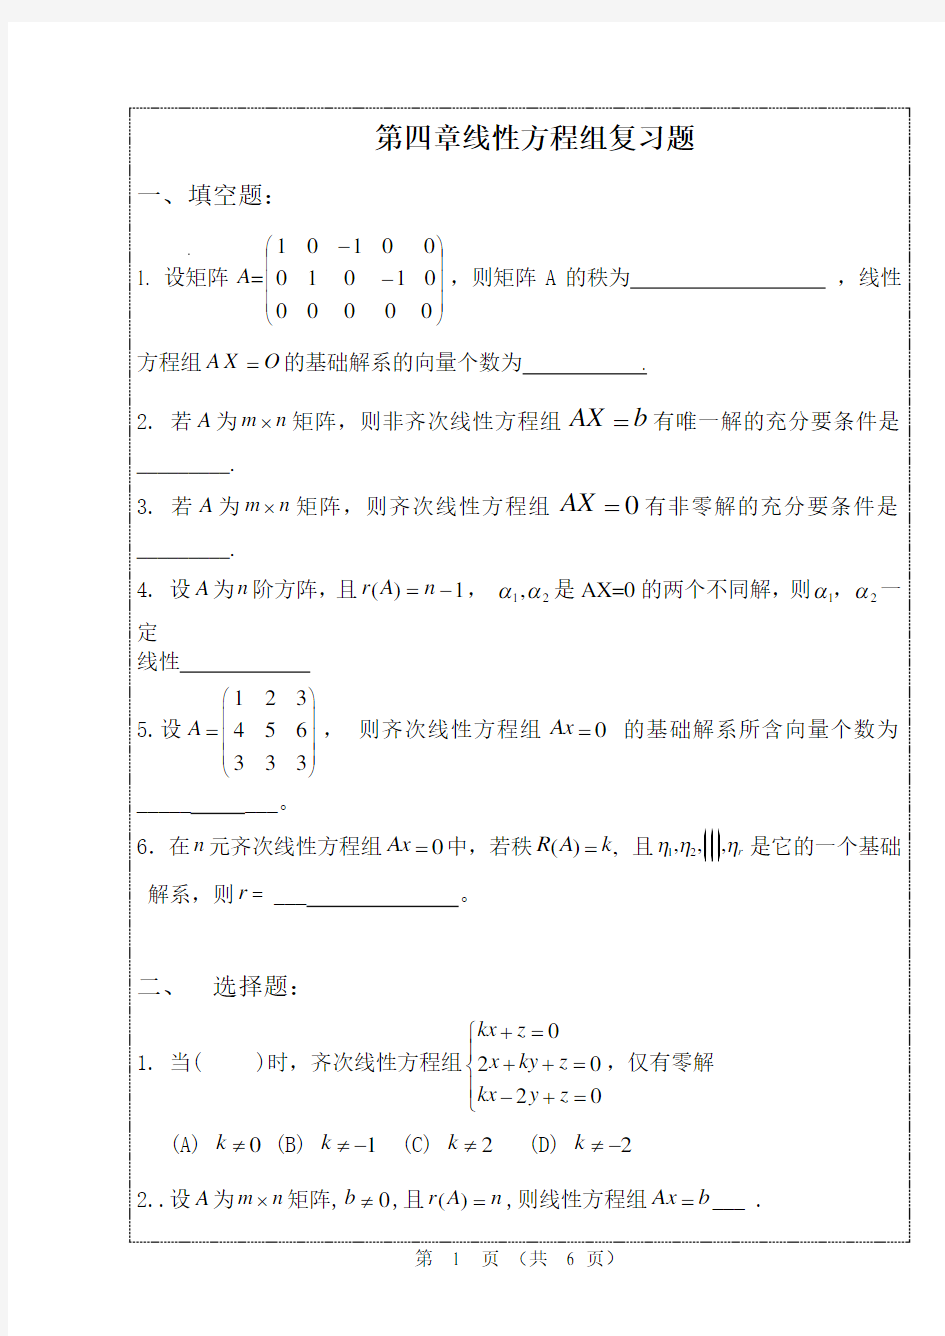 线性代数第四章线性方程组复习题(32课时)